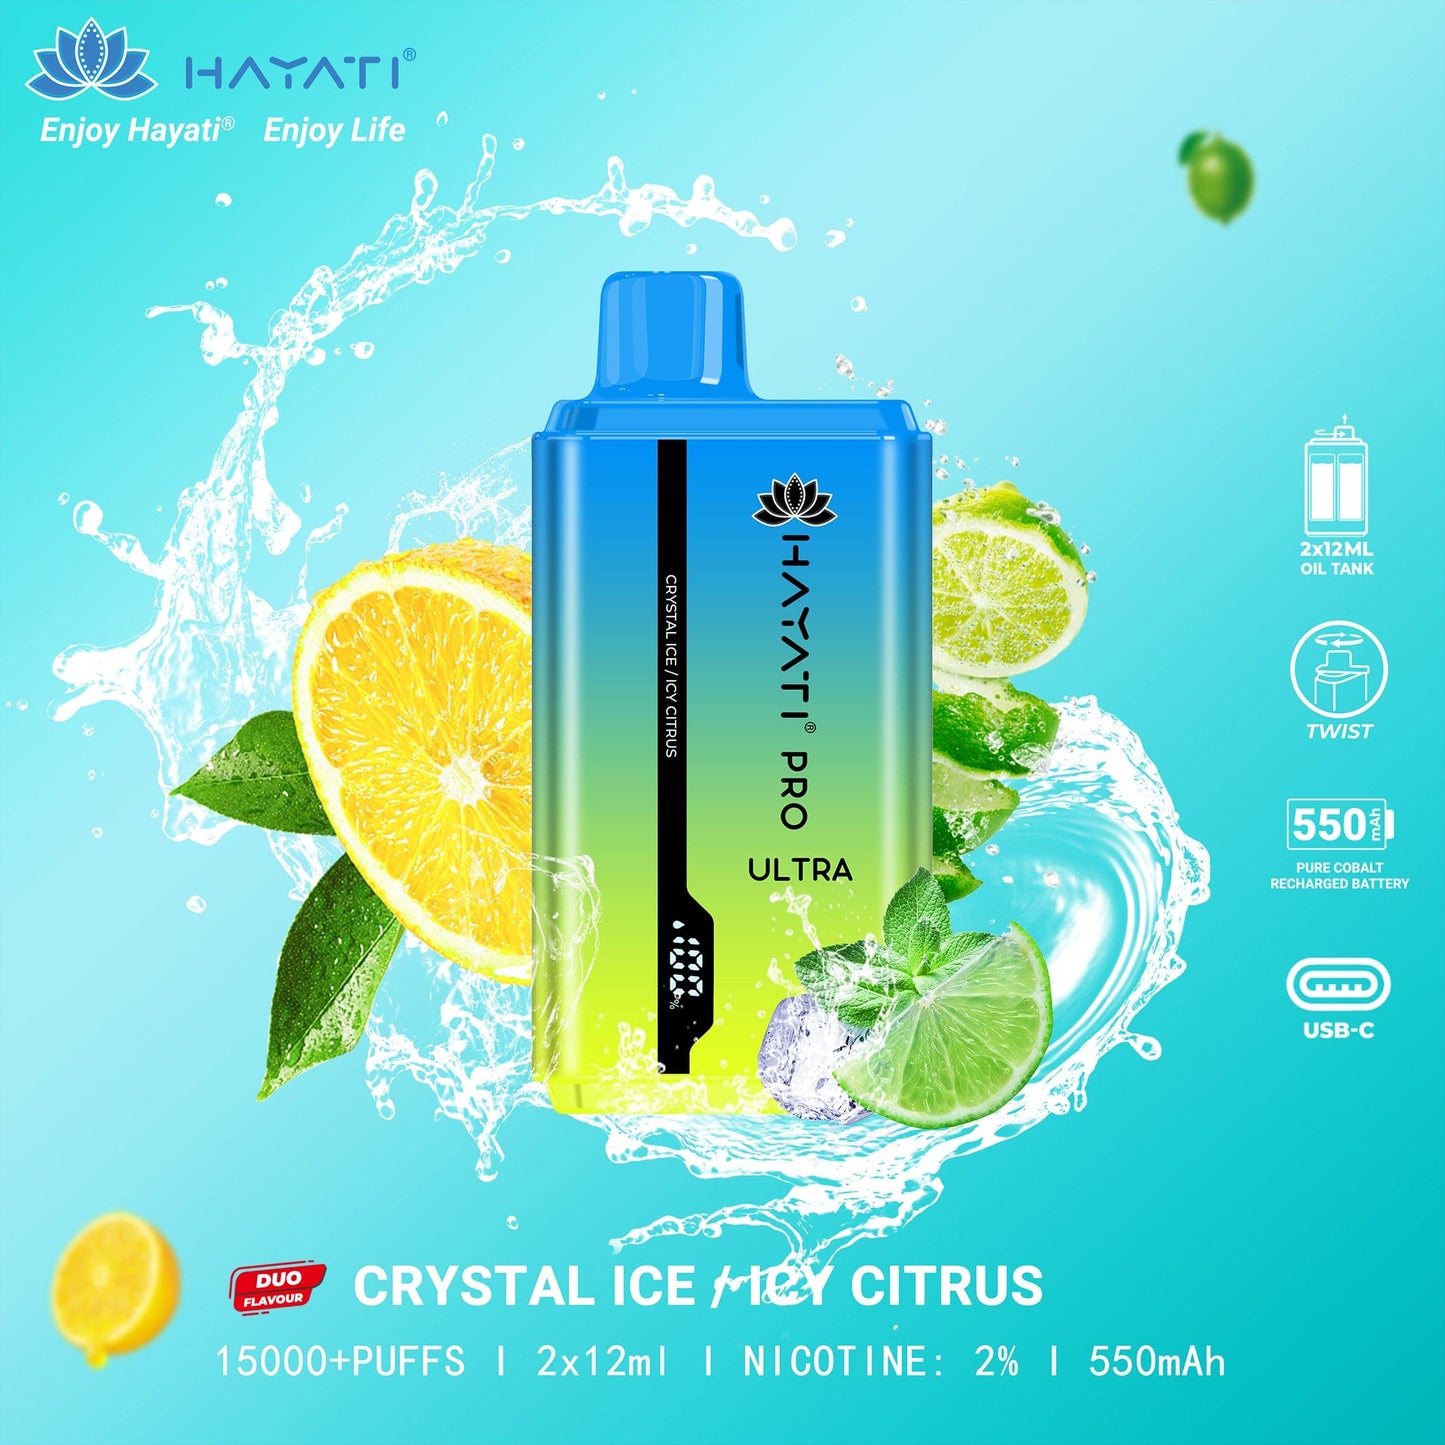 Hayati Pro Ultra 15000 Puffs Disposable Vape